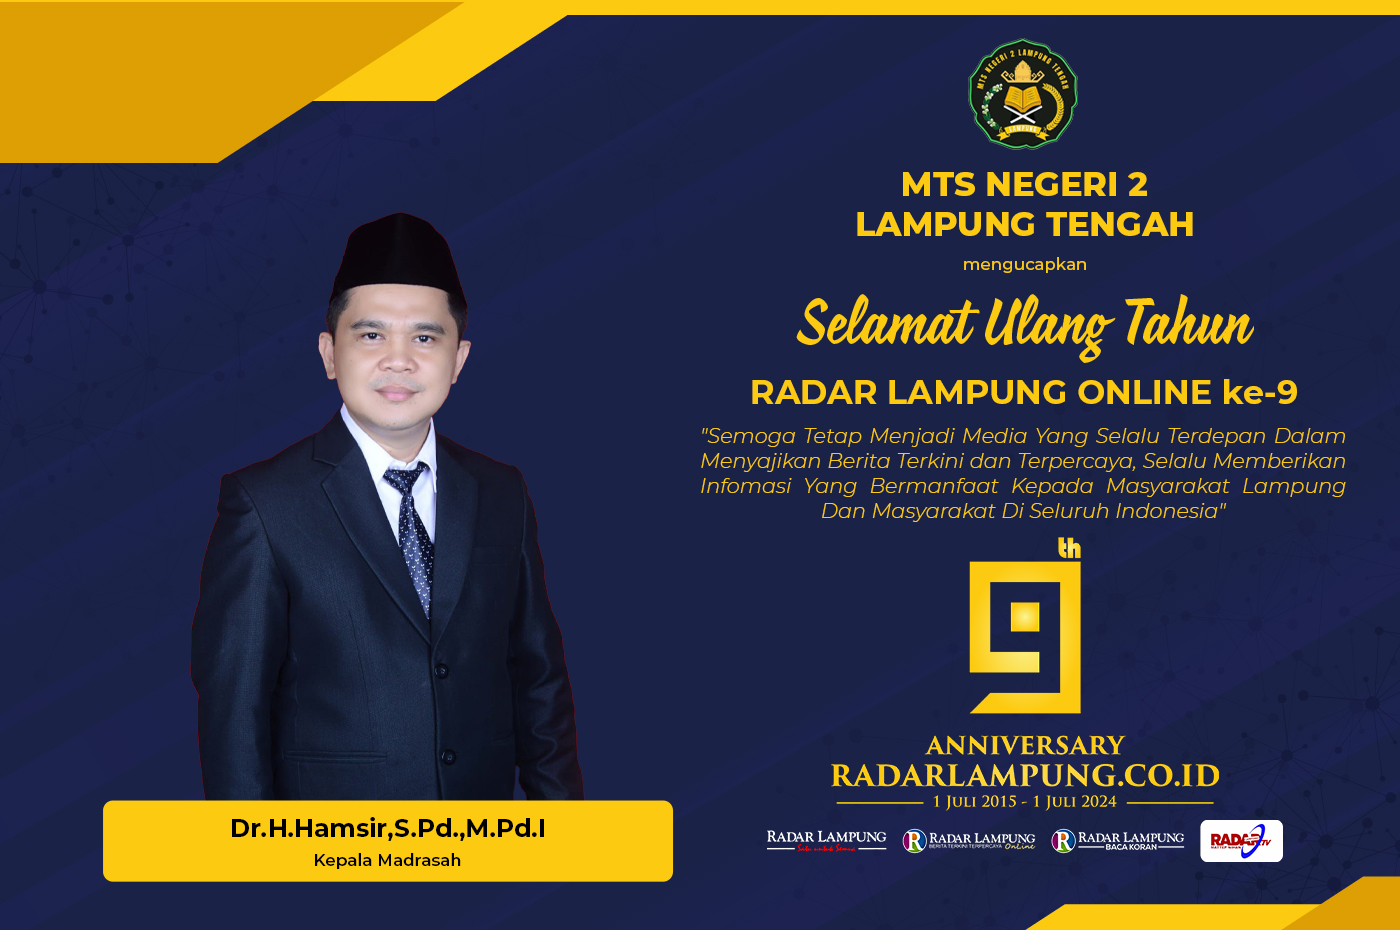 MTS Negeri 2 Lampung Tengah Mengucapkan Selamat Ulang Tahun ke-9 Radar Lampung Online